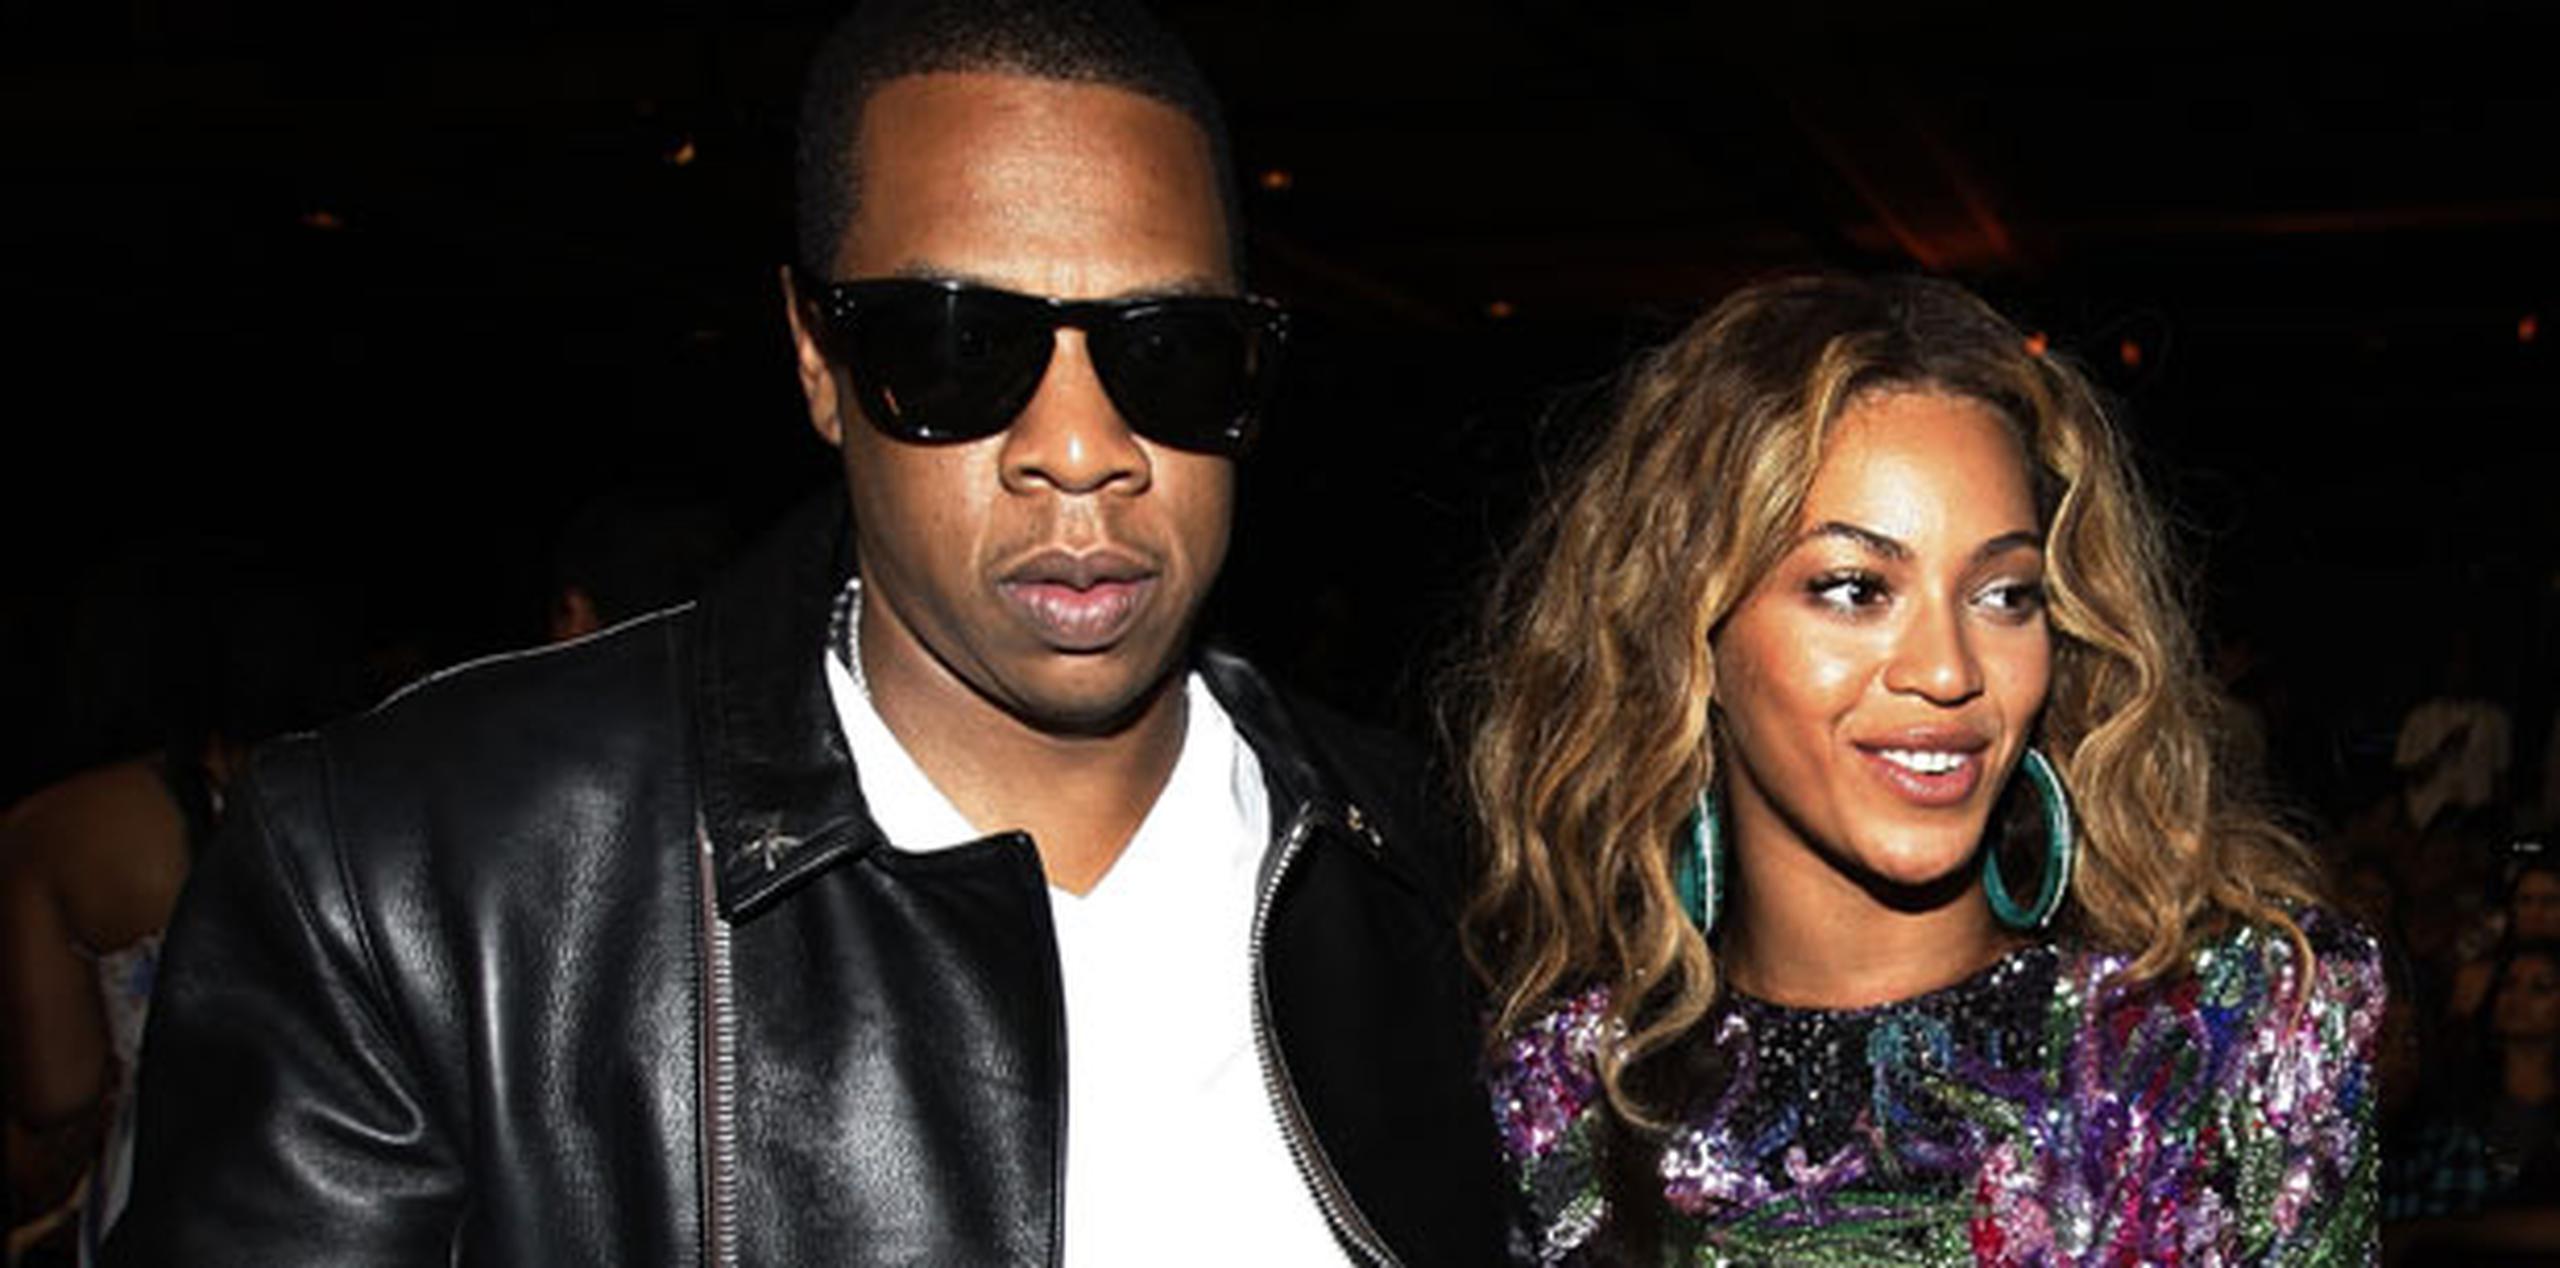 Jay Z y Beyoncé se casaron en 2008 y tienen una hija, Blue Ivy Carter, quien nació en enero de 2012. (Archivo)